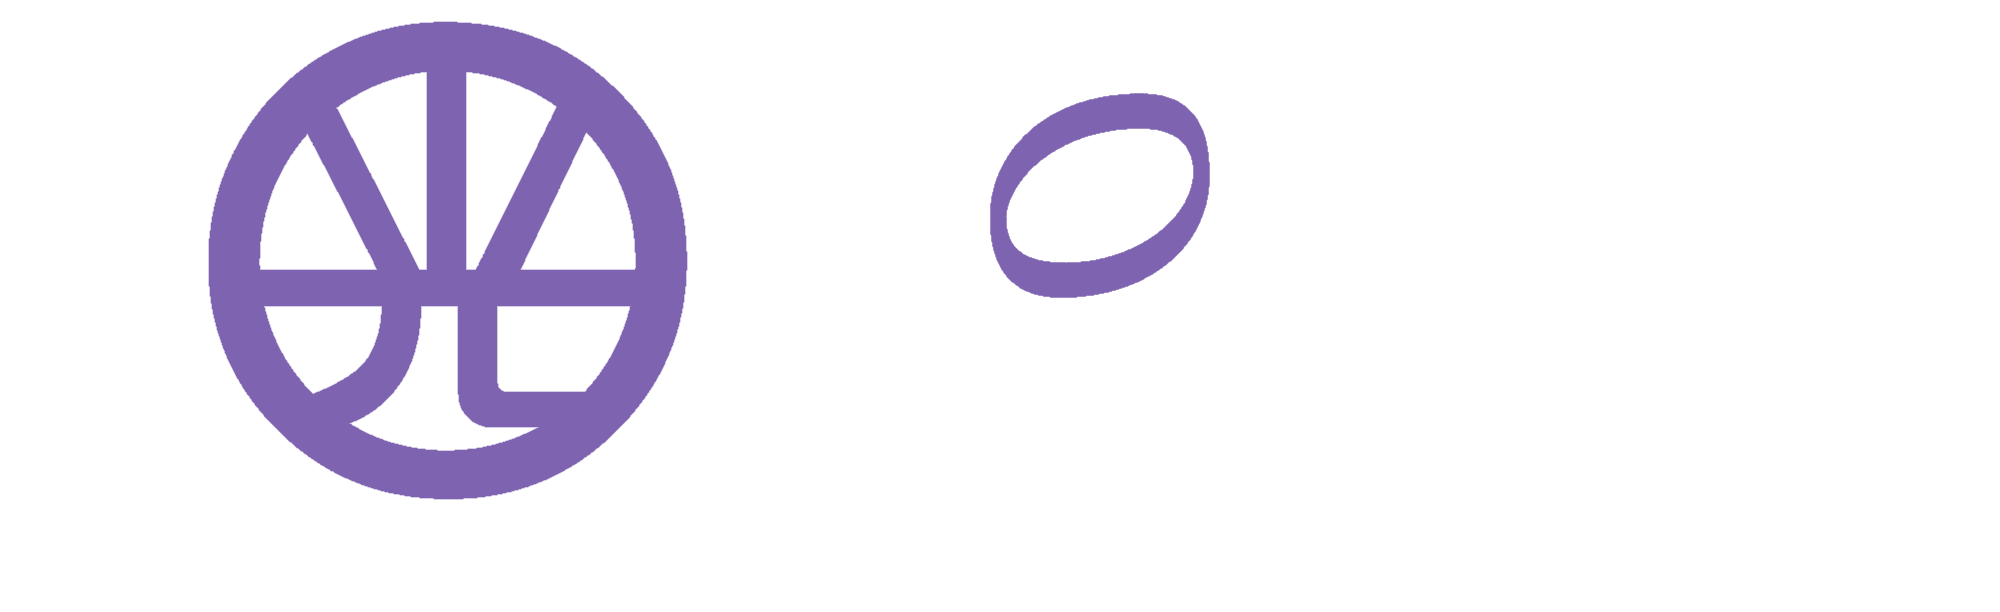 株式会社KOYO-Group